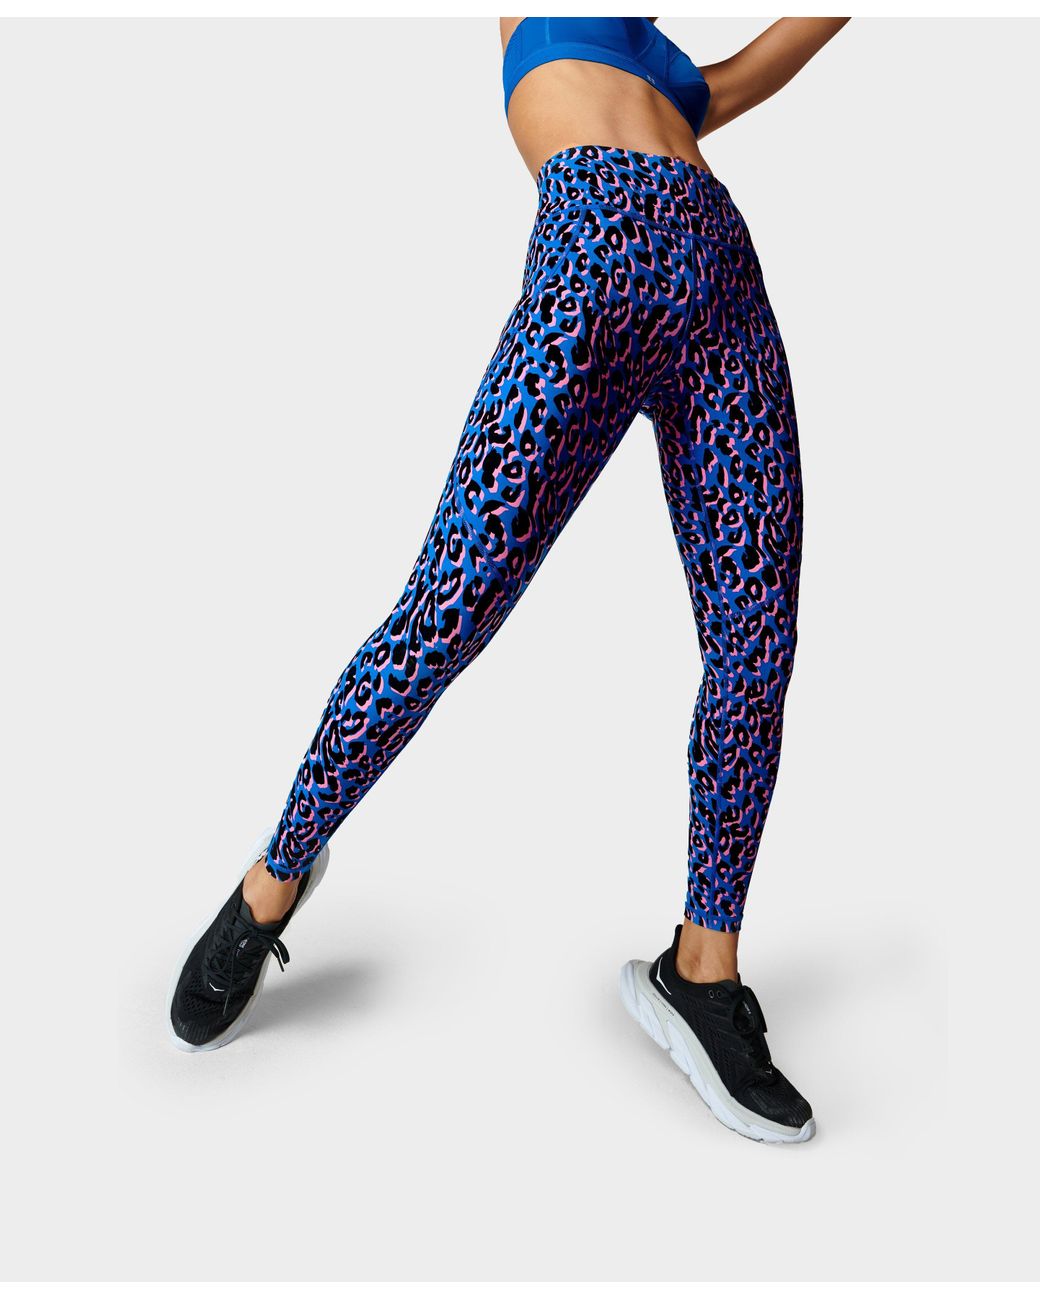 Sweaty Betty Power Workout Leggings in Pink Leopard Print (Blue) | Lyst